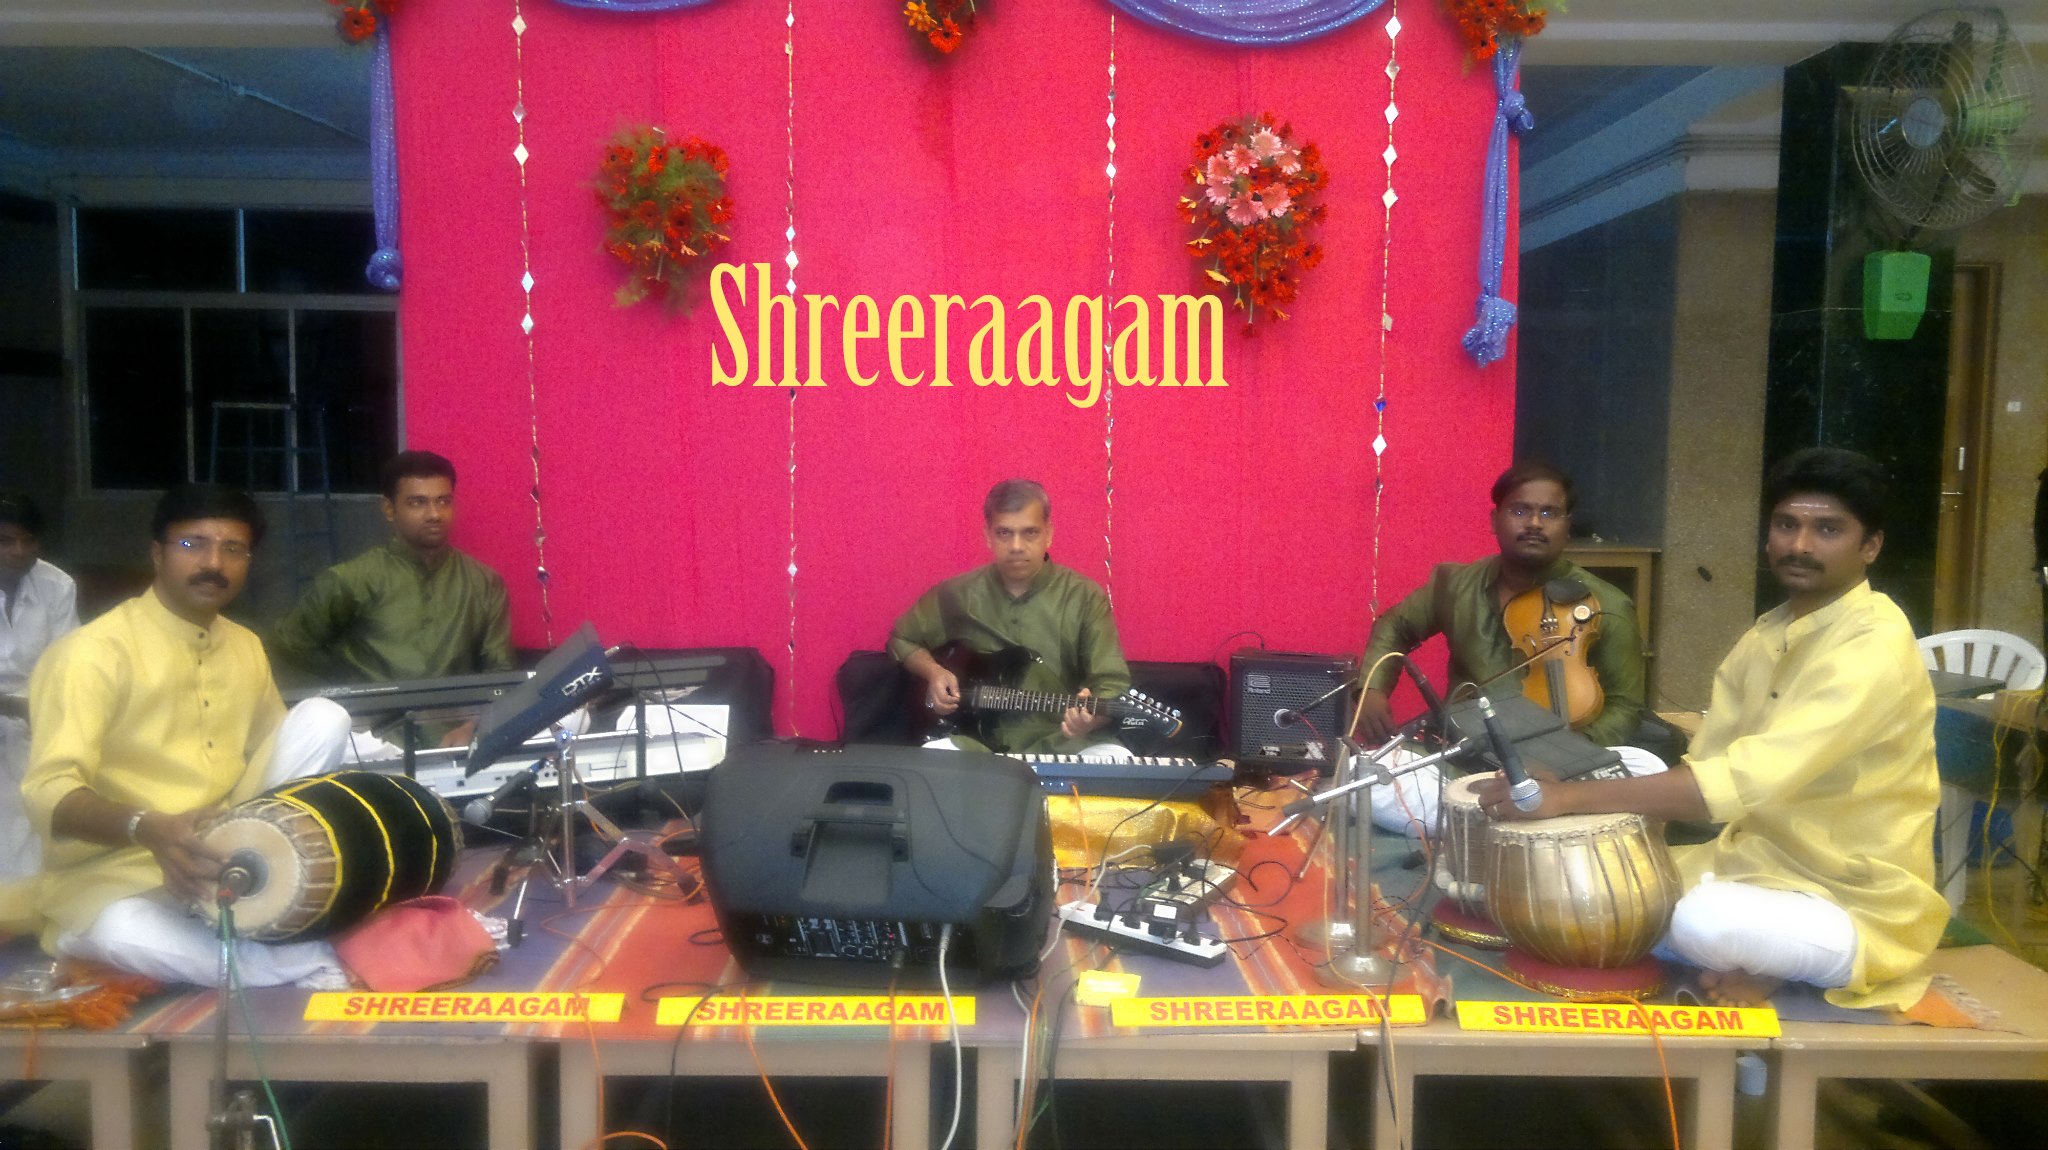  Shreeraagam-img16